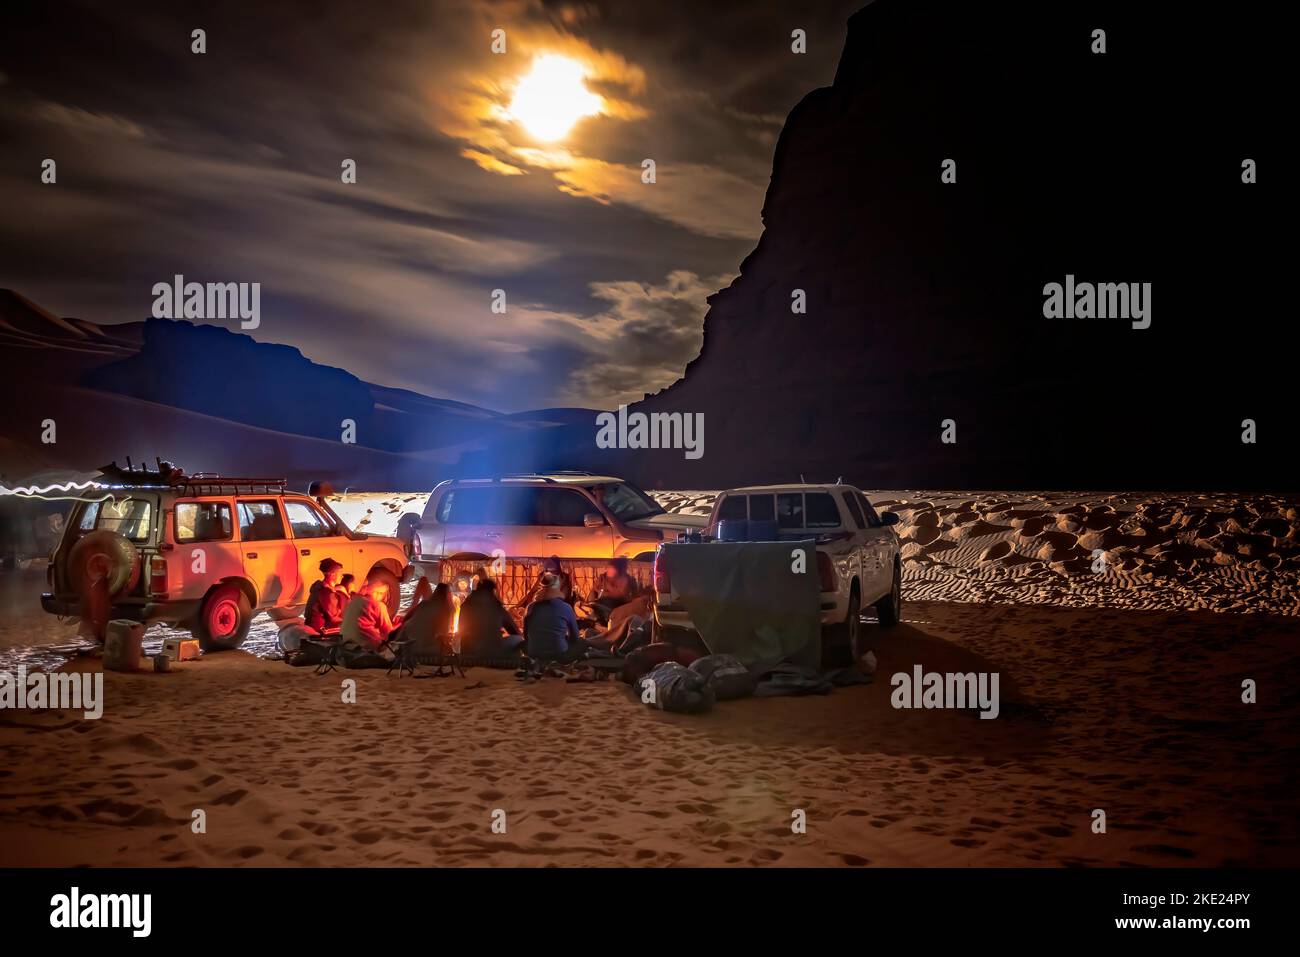 Camping gruppo nel deserto del Sahara di notte. Veicoli 4X4 parcheggiati, turisti e gente berbera locale seduti intorno a un falò. cielo nuvoloso chiaro di luna. Foto Stock